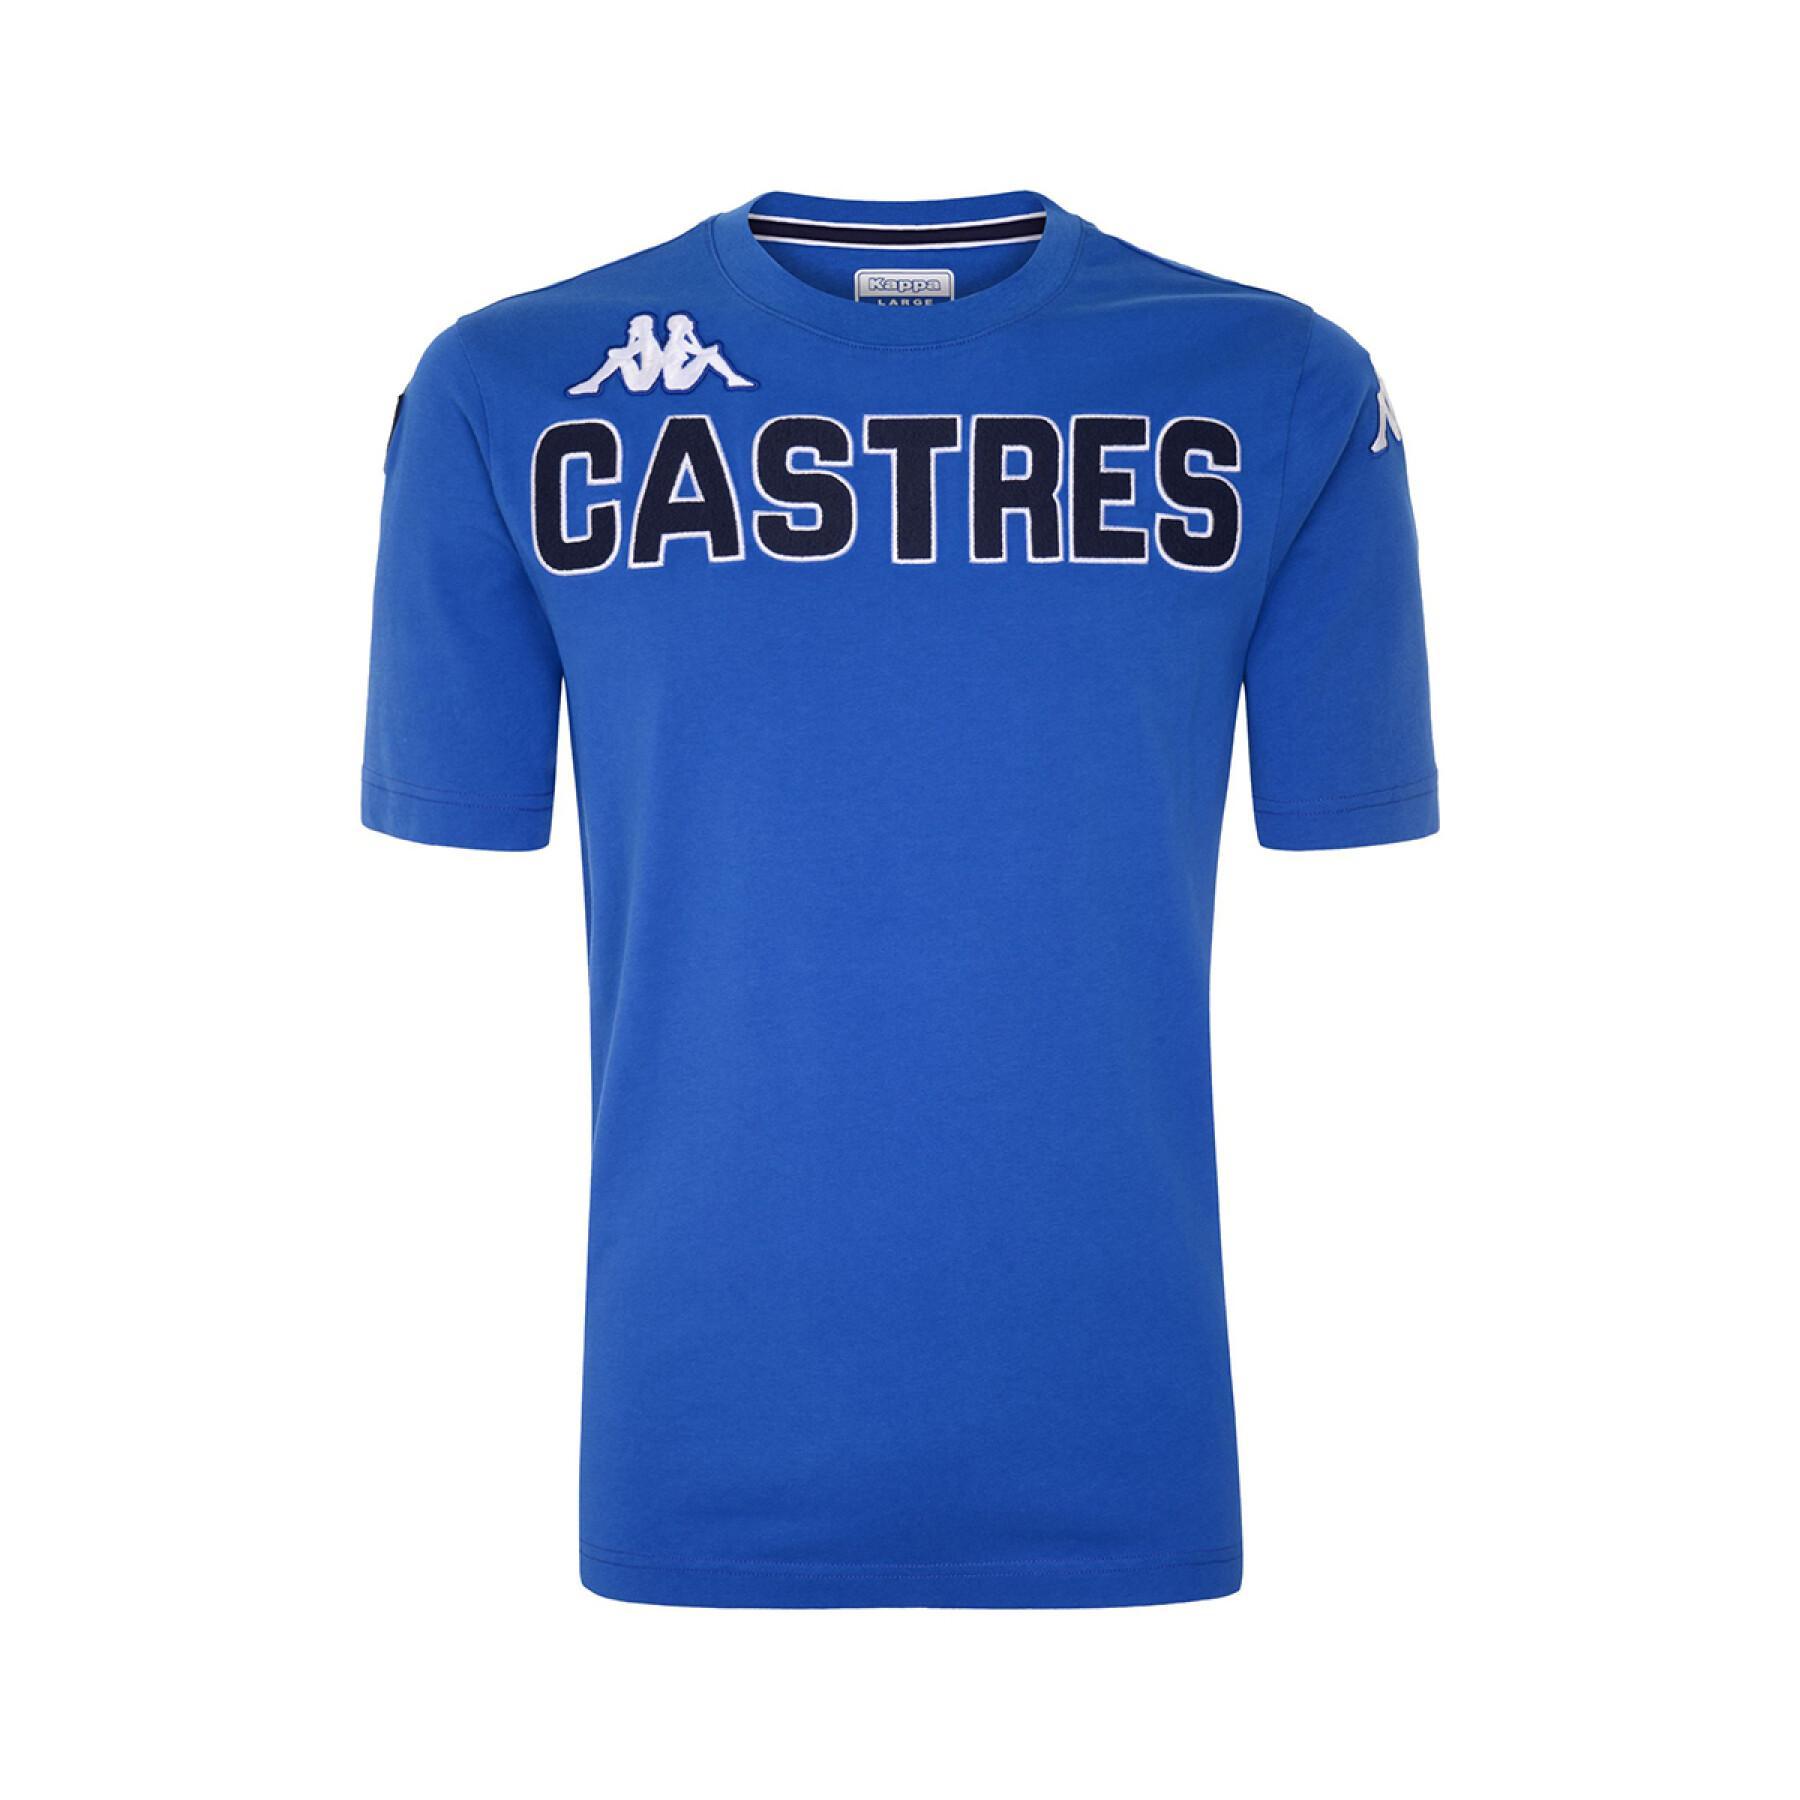 Koszulka Castres Olympique 2021/22 eroi